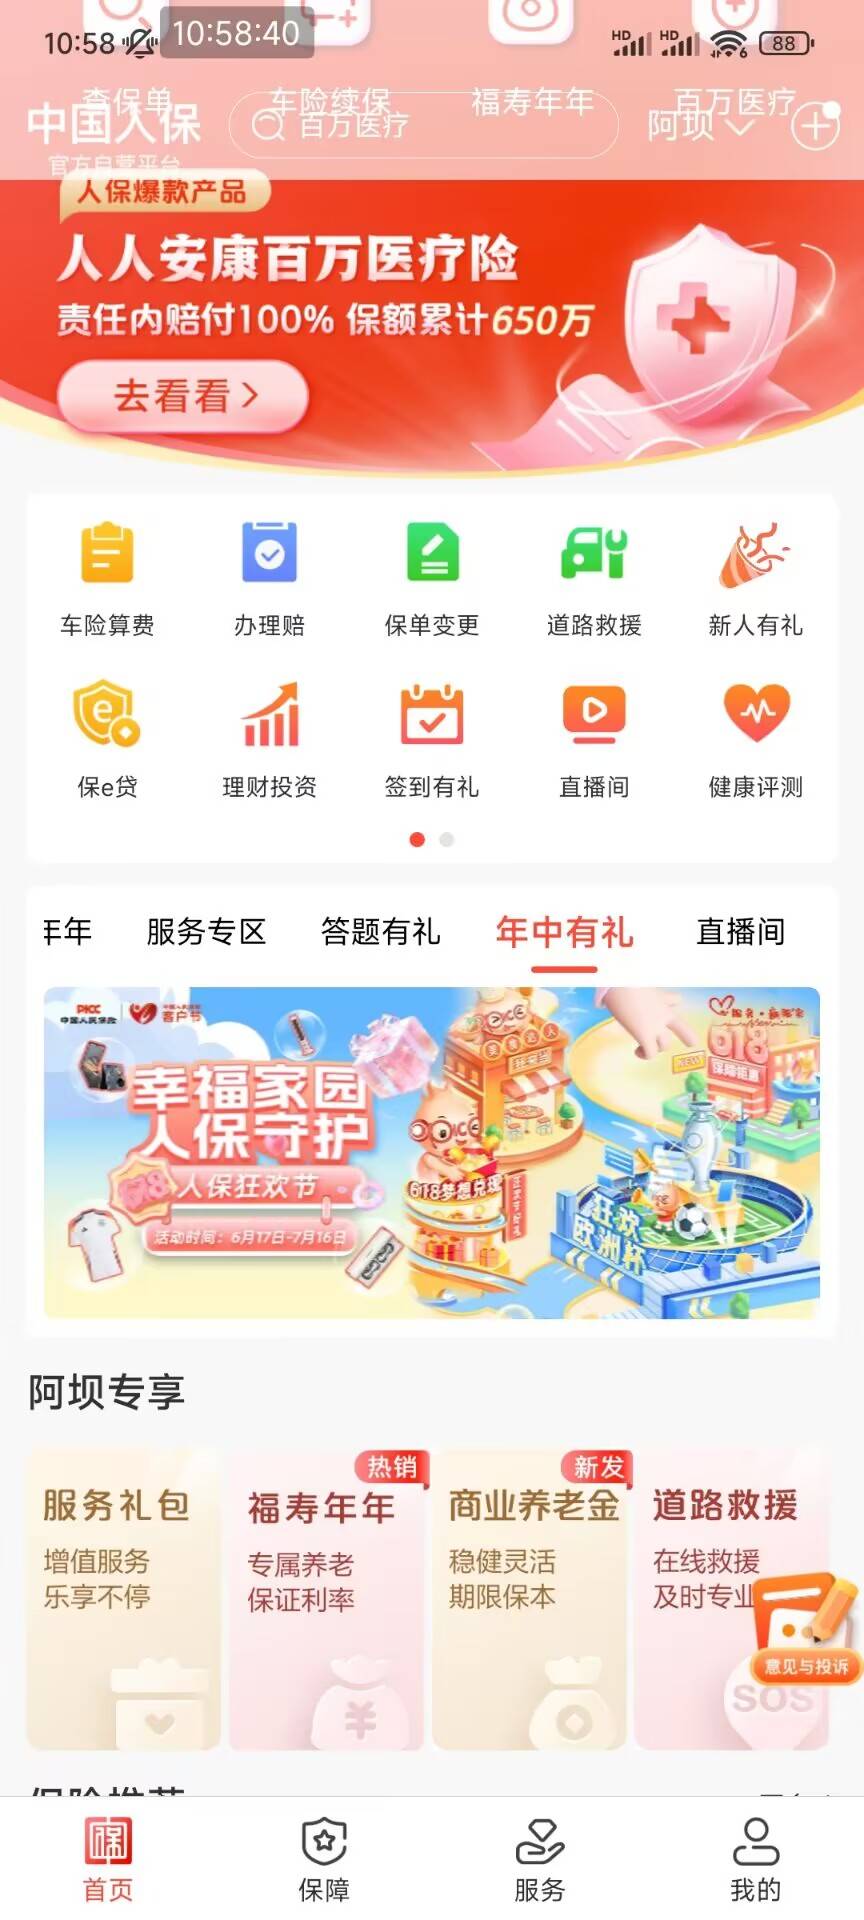 发现一个毛，中国人保app首页横幅进去做任务积分可以换东西，一天可以做40多积分，可100 / 作者:Caravana / 